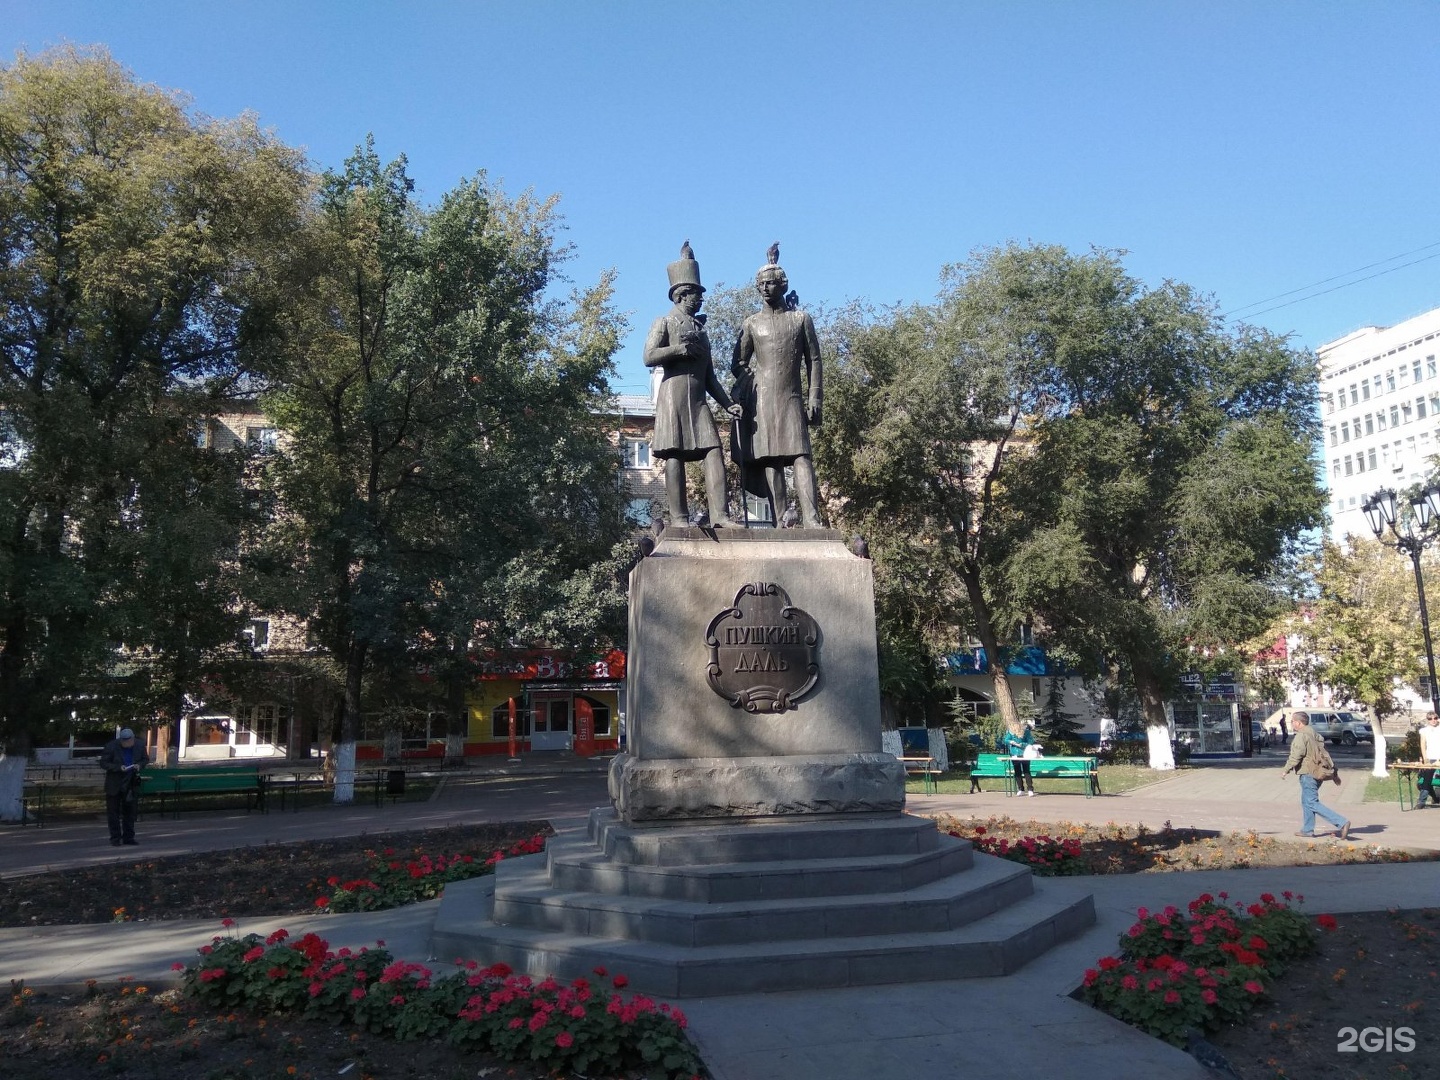 Памятник пушкину и далю в оренбурге фото